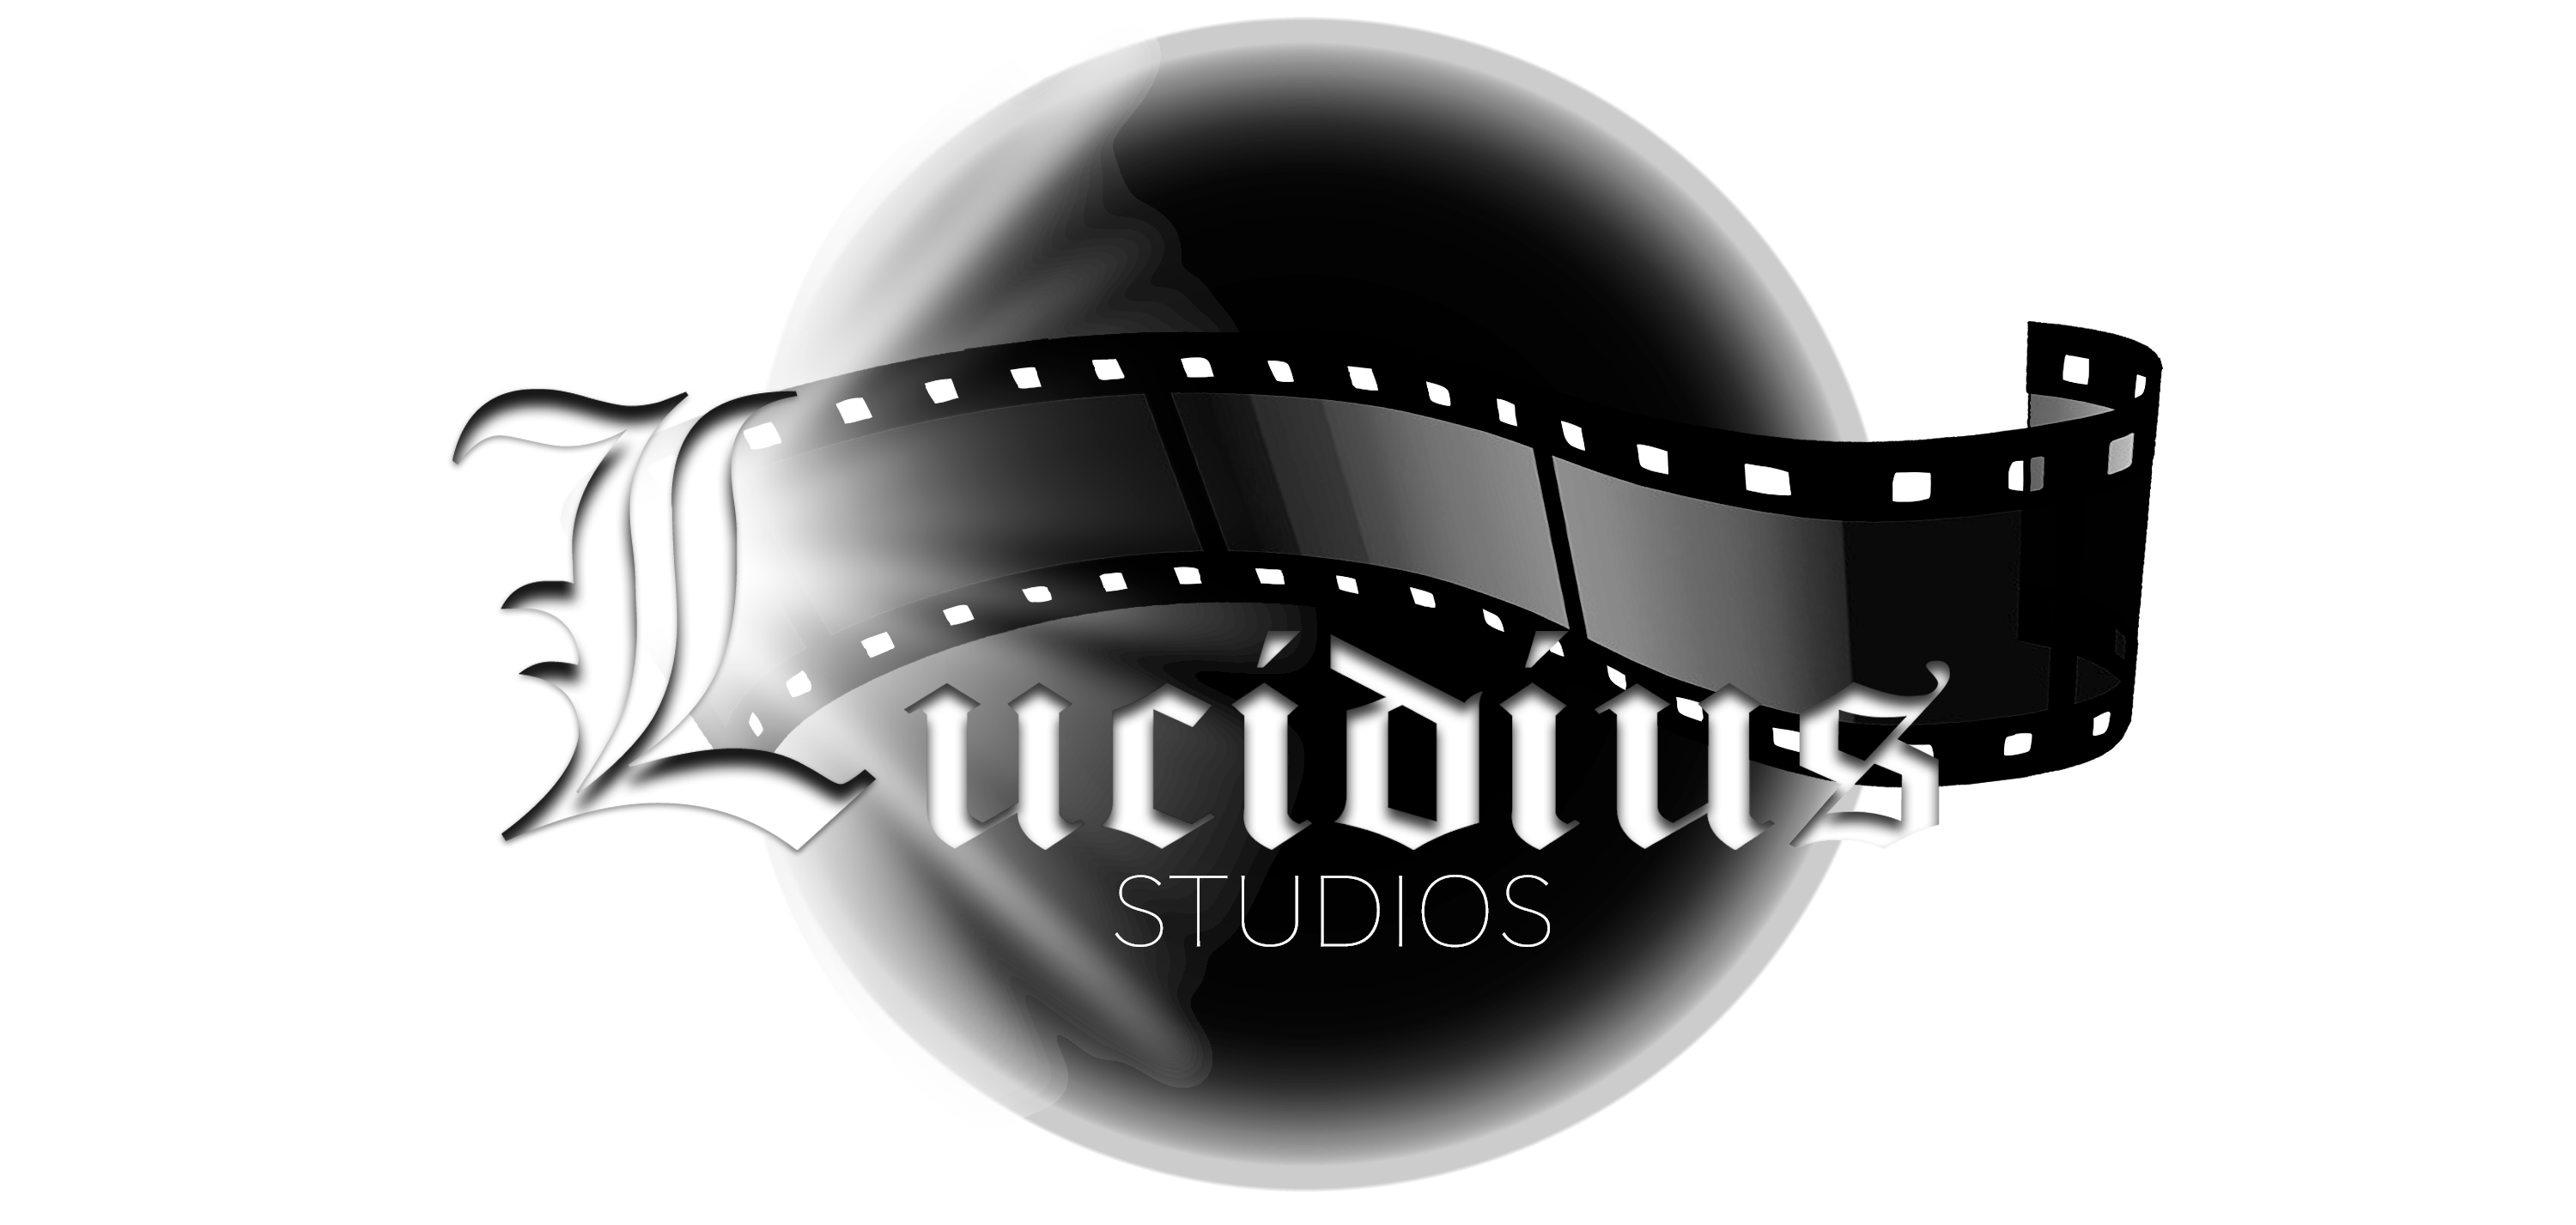 Studios Lucidius Vidéo Corporative à Longueuil offre des produits et service dans la région de Montérégie tels que : Pour les entreprises, Musique / Multimédias et notre répertoire des entreprises québécoises est fier de présenter Studios Lucidius Vidéo Corporative à Longueuil en Montérégie.